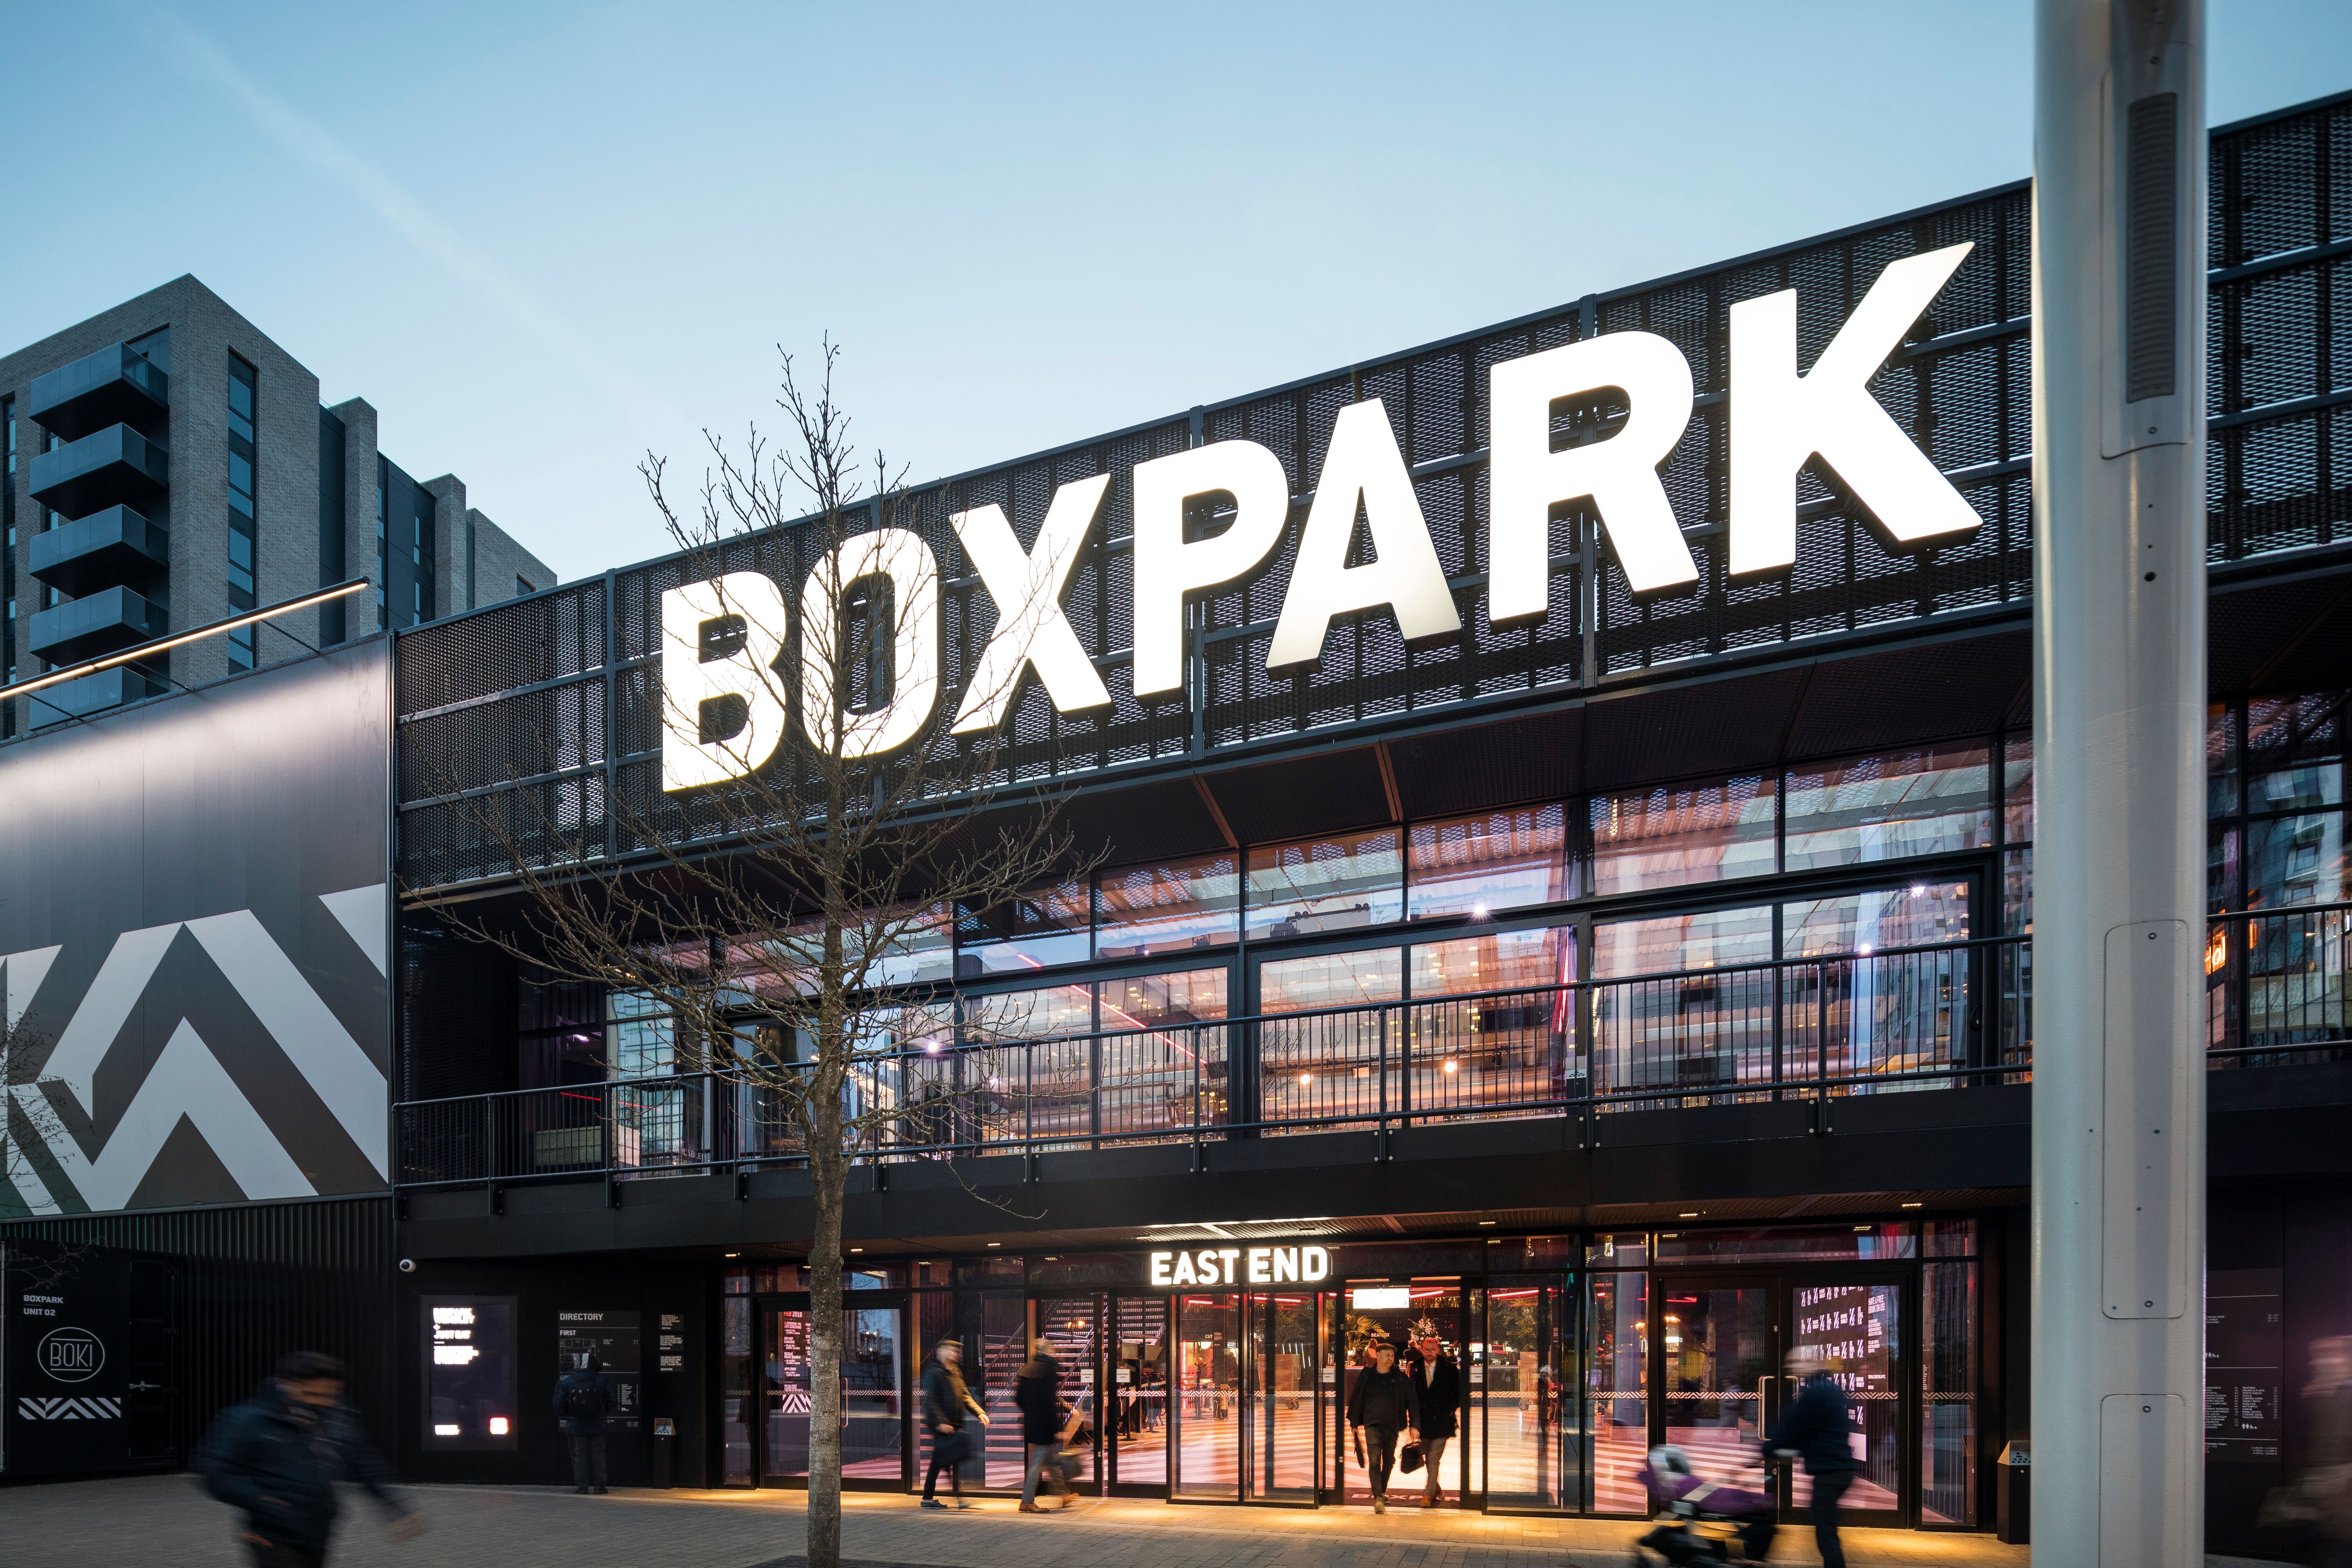 Boxpark reports revenue of £18.9m